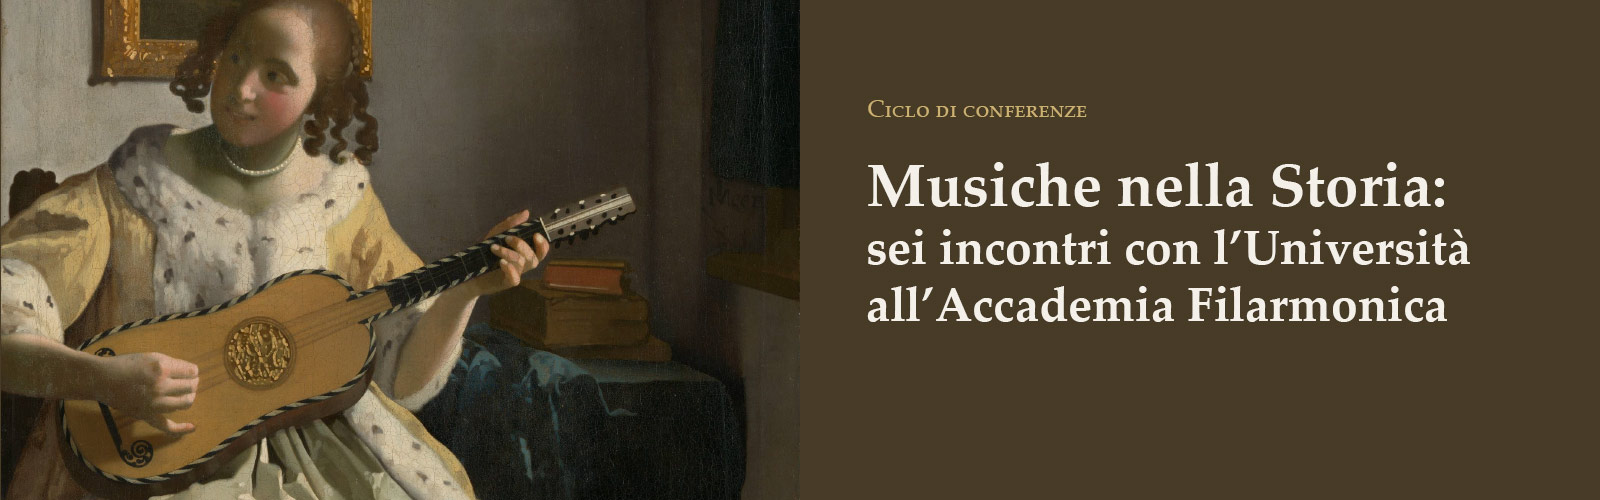 Ciclo di conferenze Musiche nella Storia: sei incontri con l'Università all'Accademia Filarmonica